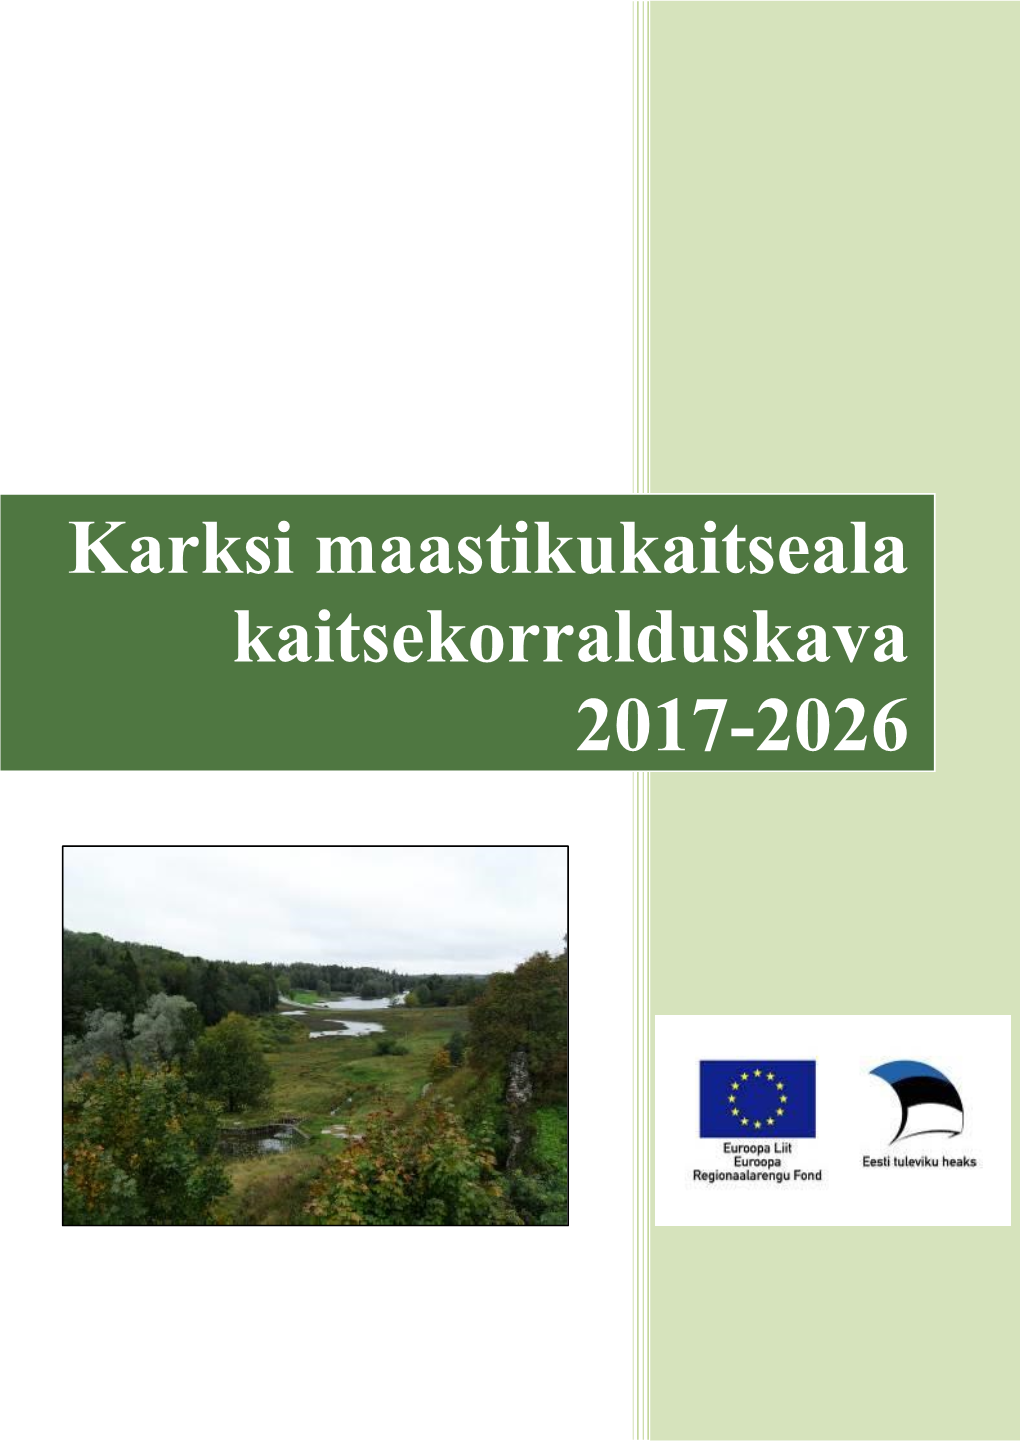 Karksi Maastikukaitseala Kaitsekorralduskava 2017-2026